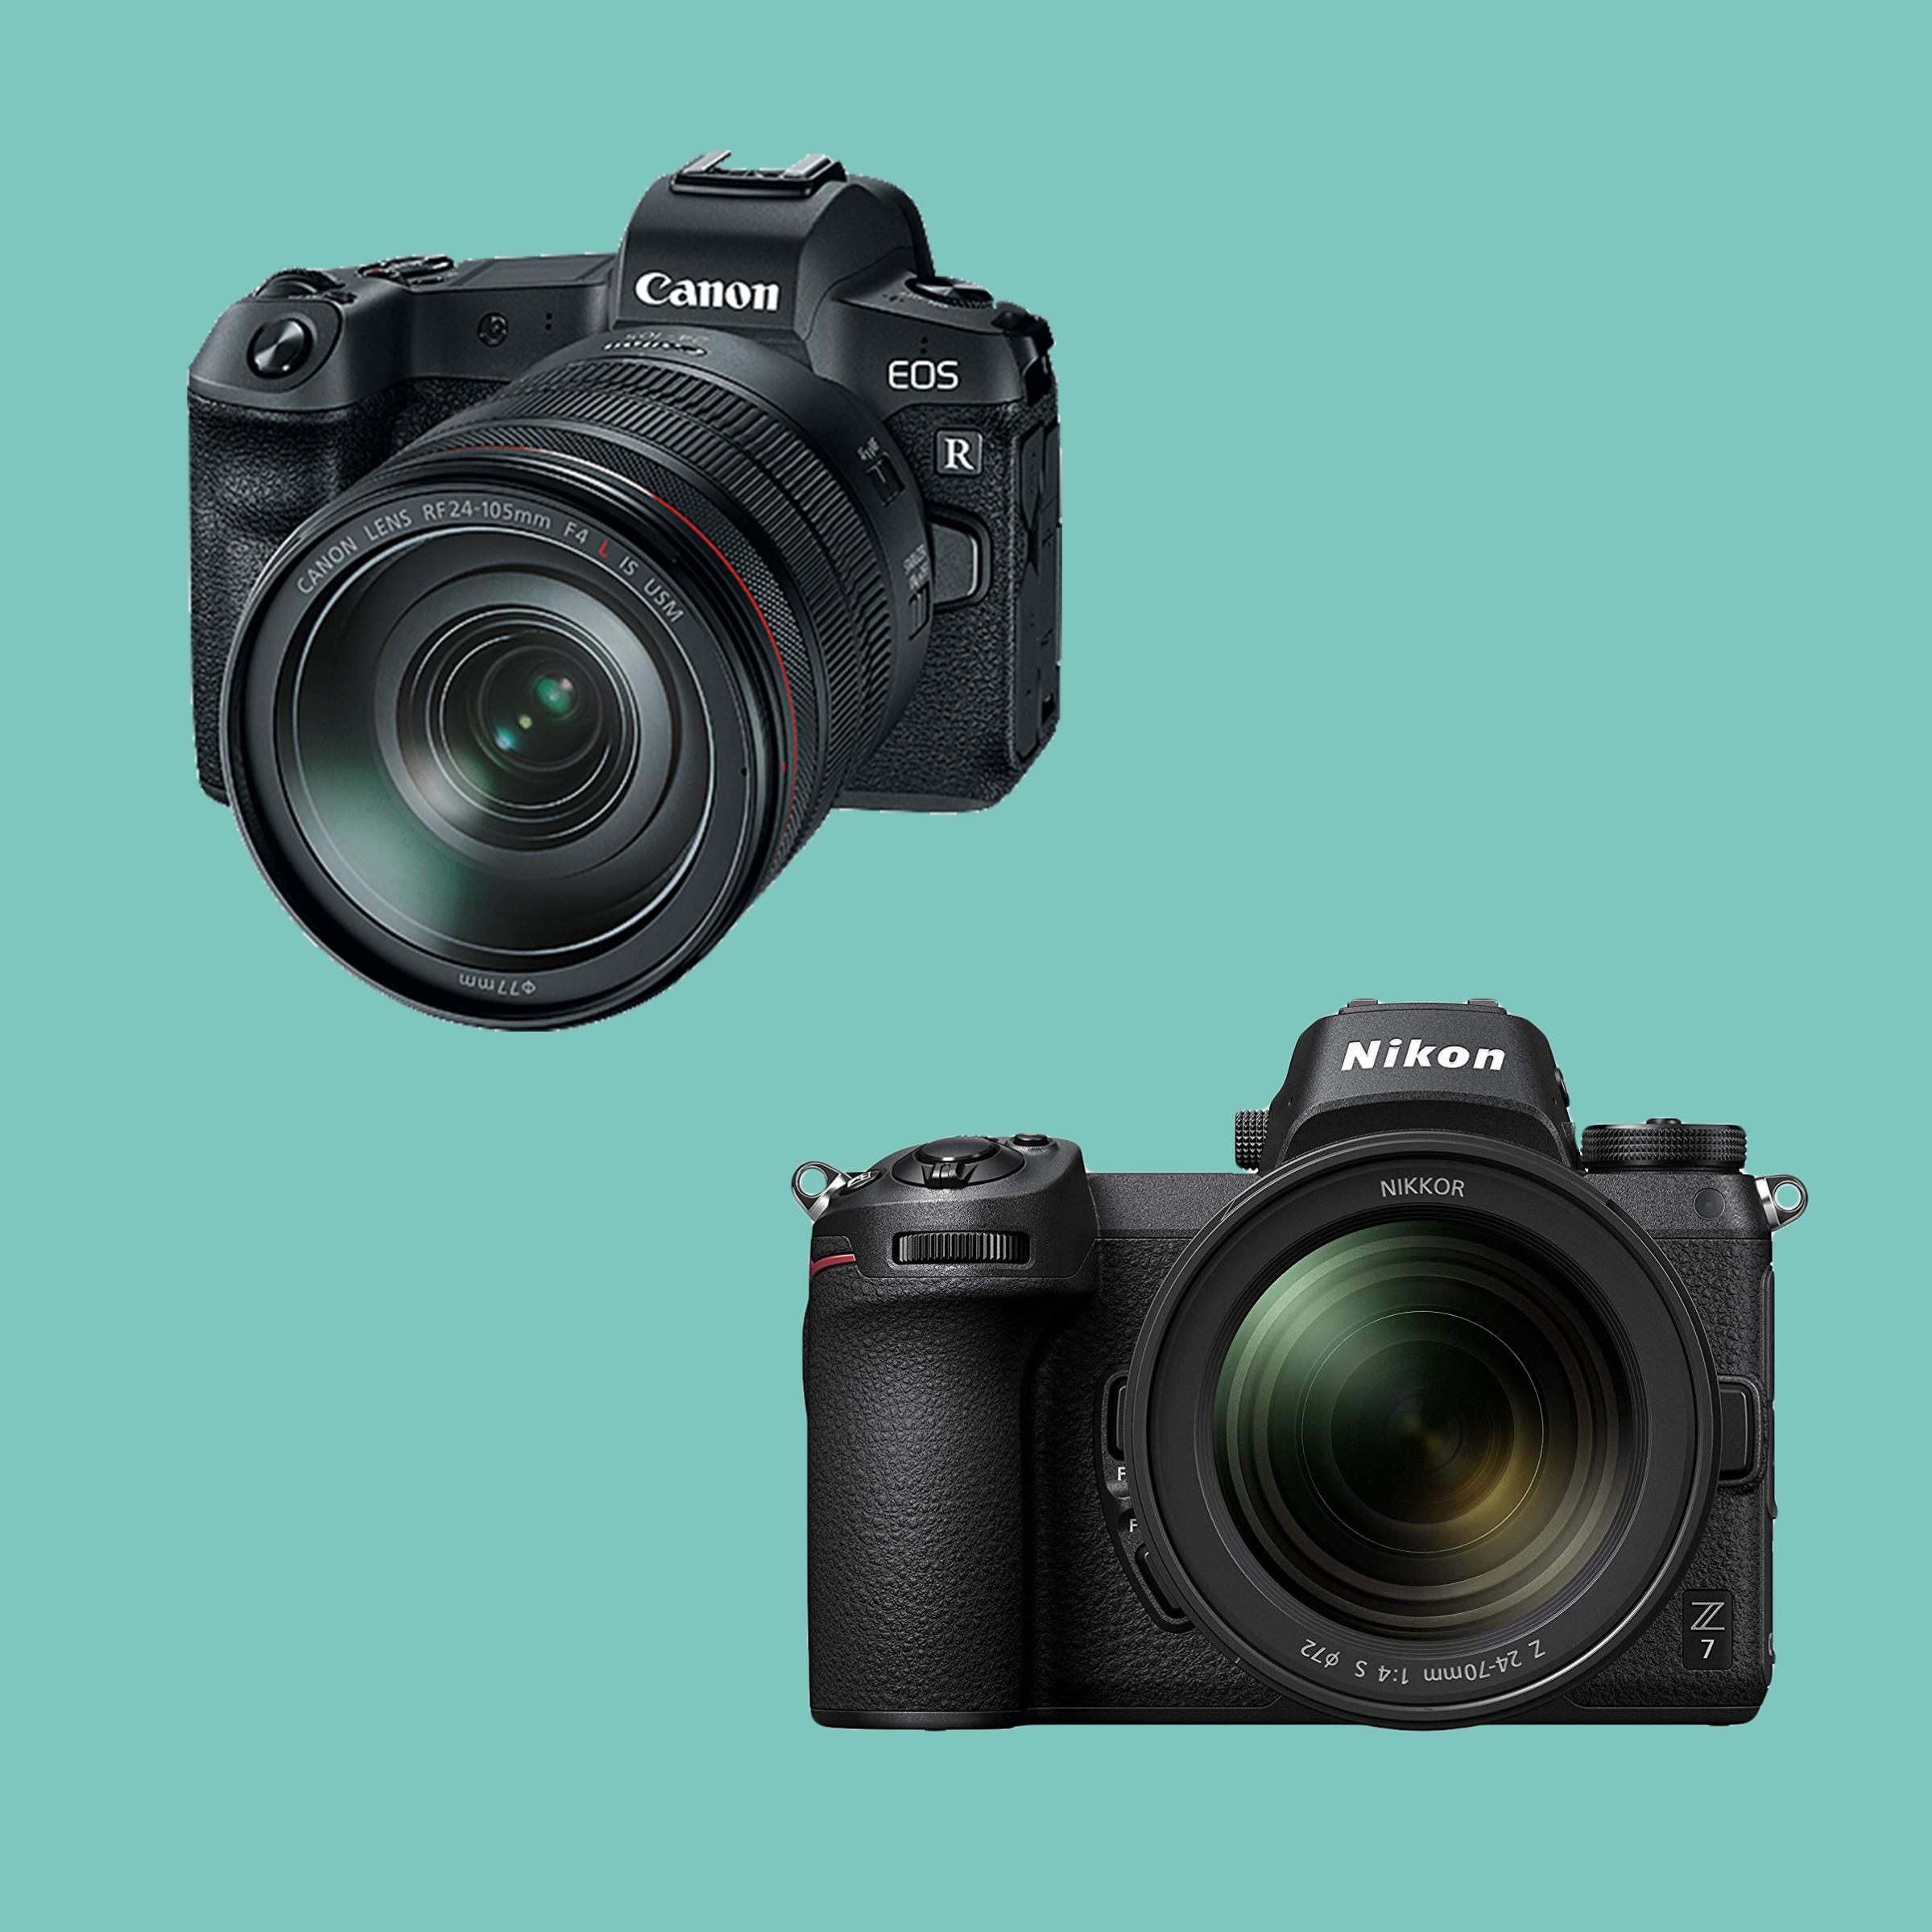 Canon EOS R and Nikon Z7